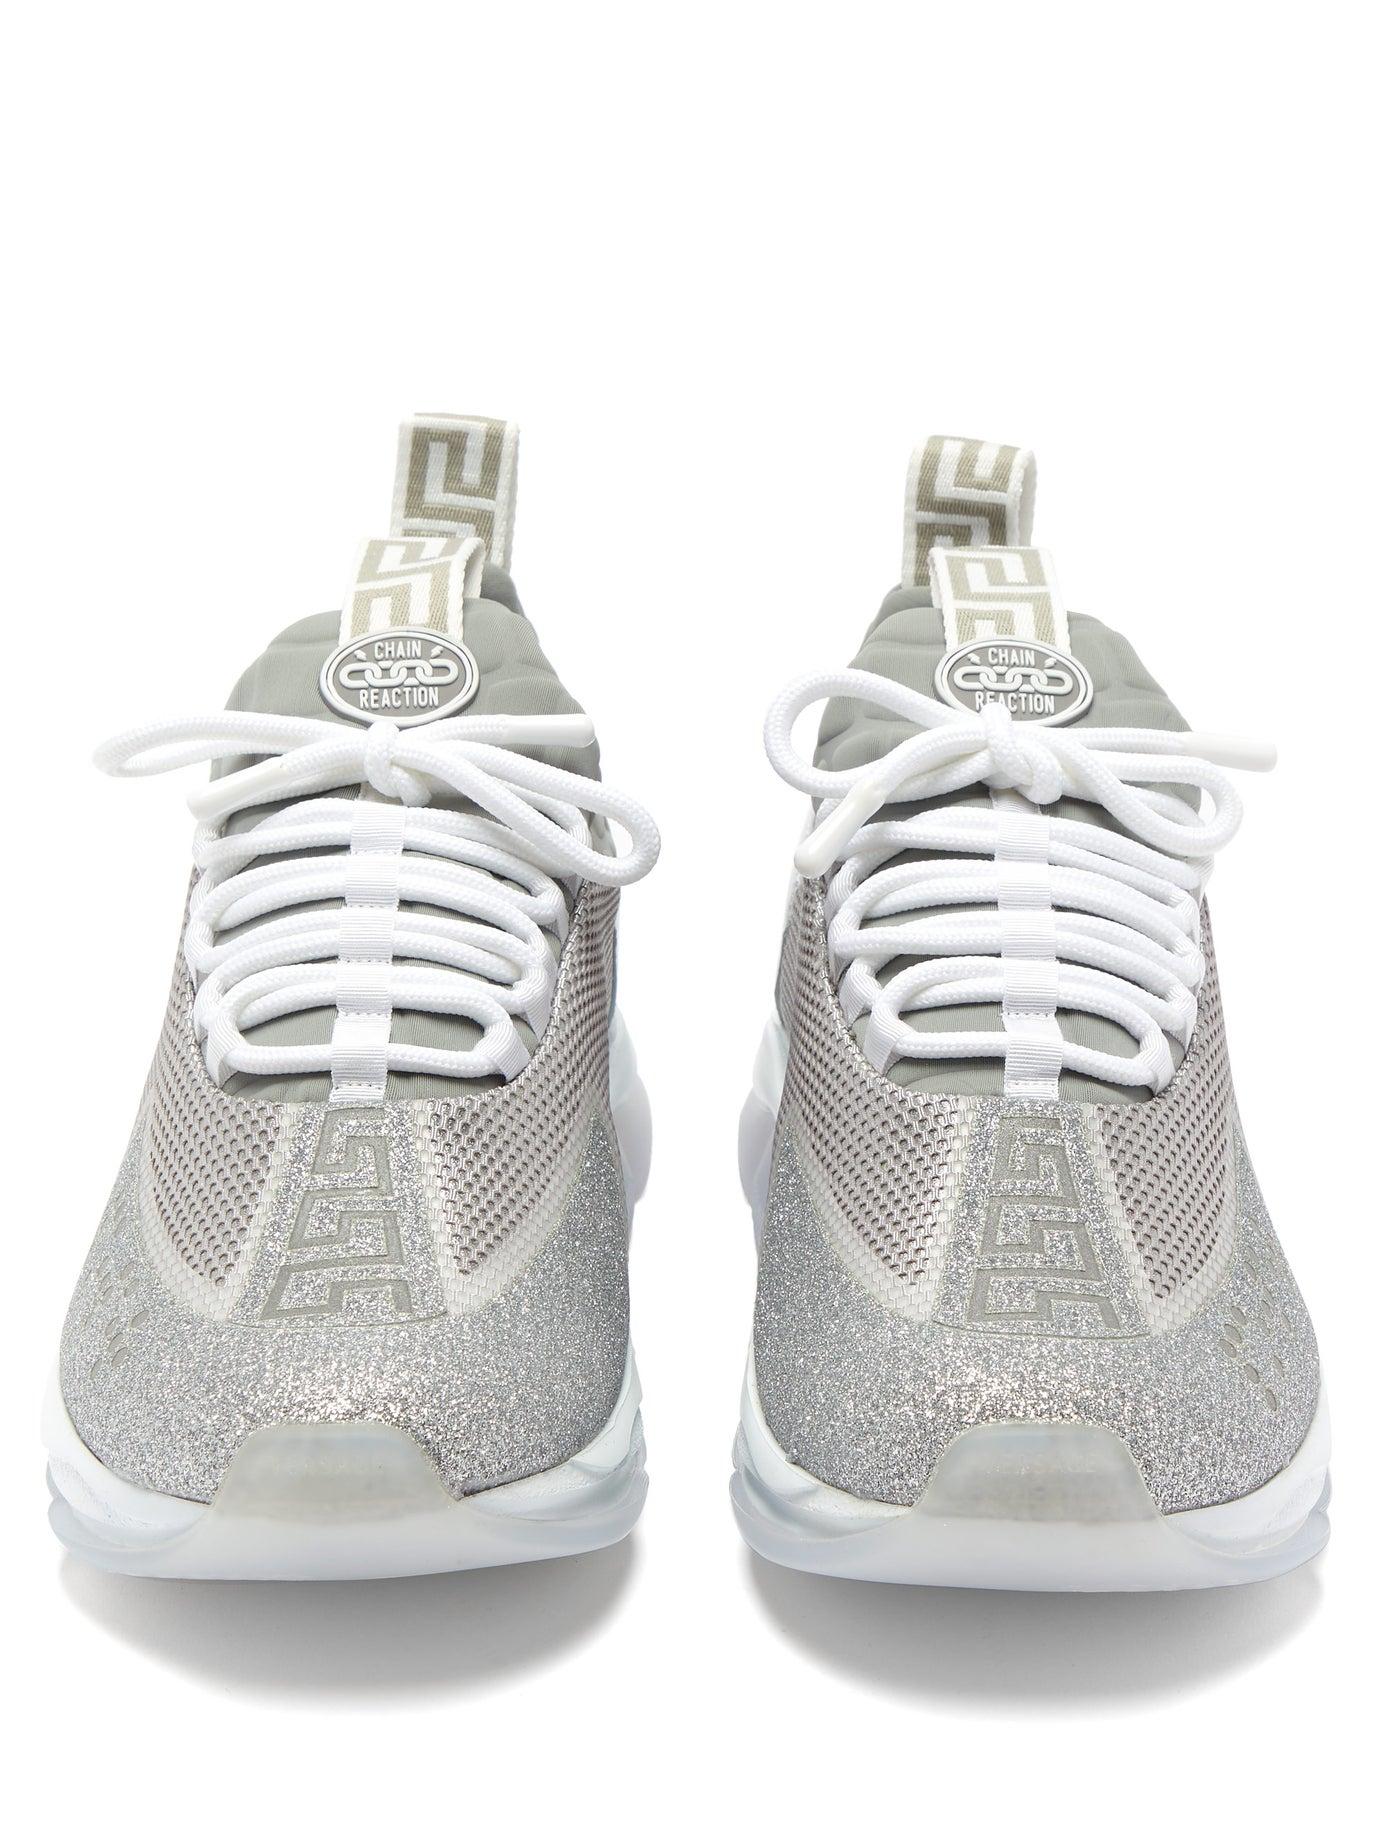 versace silver sneakers